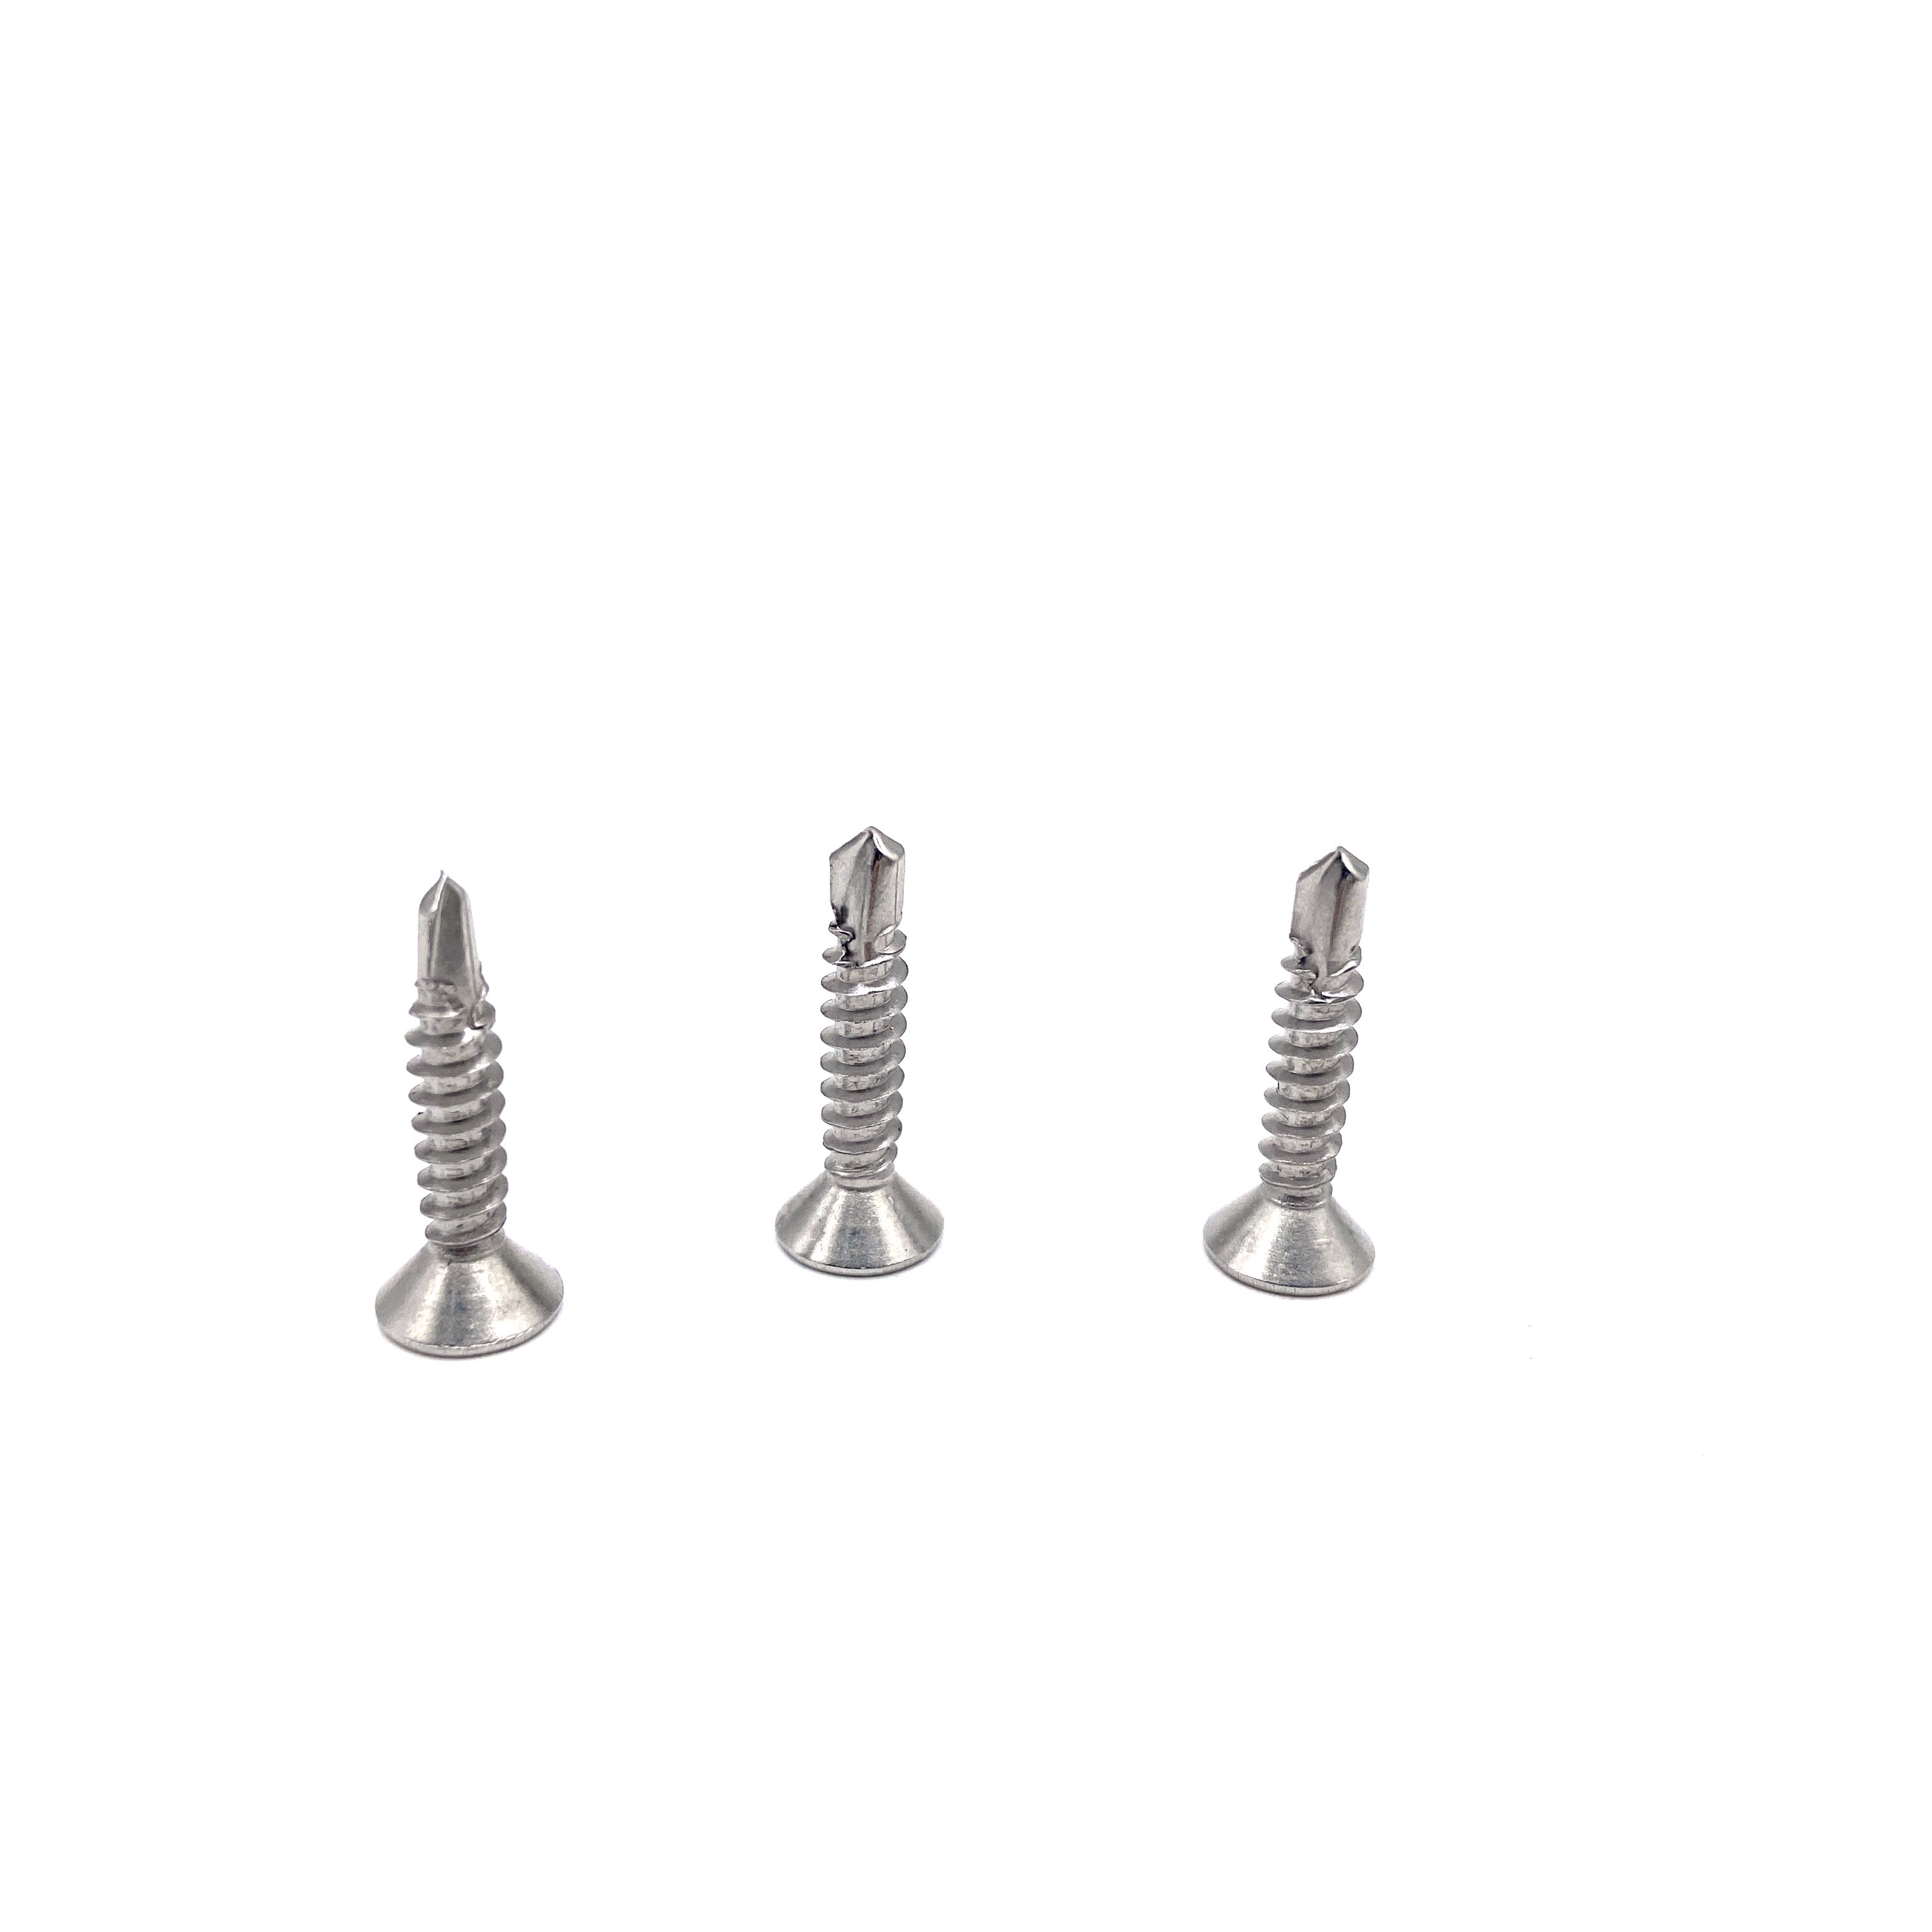 50mm stainless steel screws